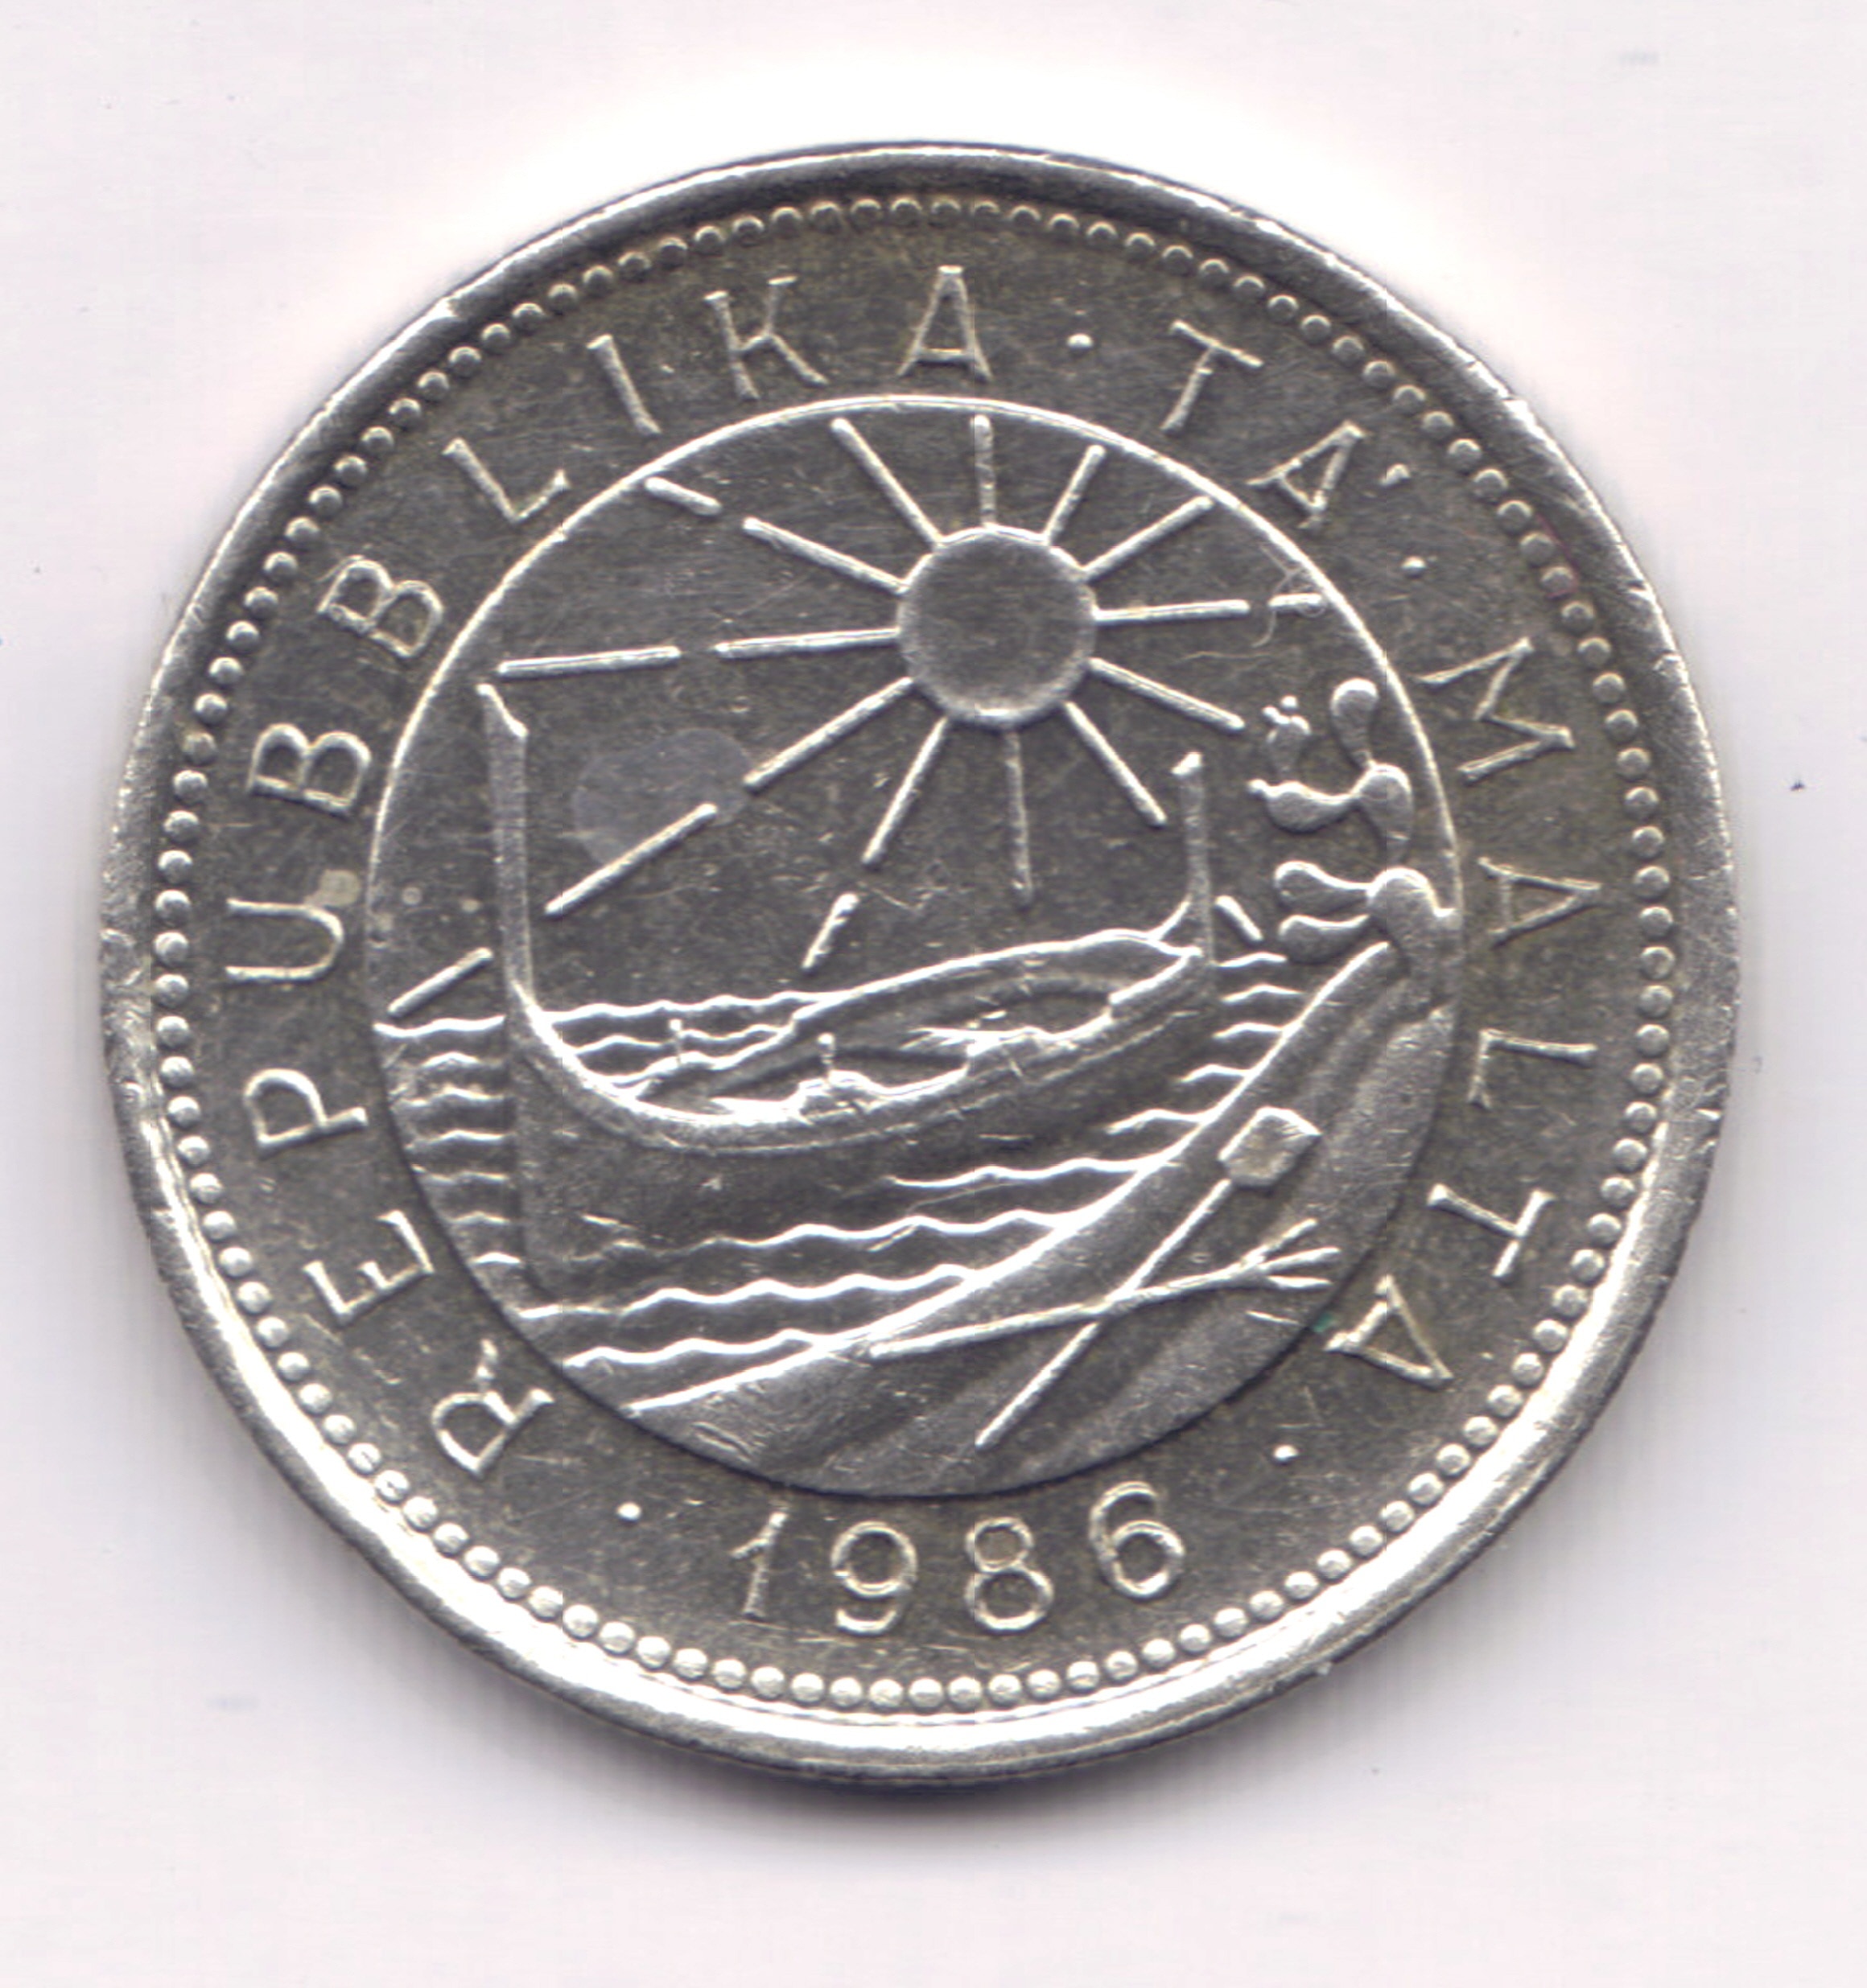 silver Republika Ta Malta 1986 coin